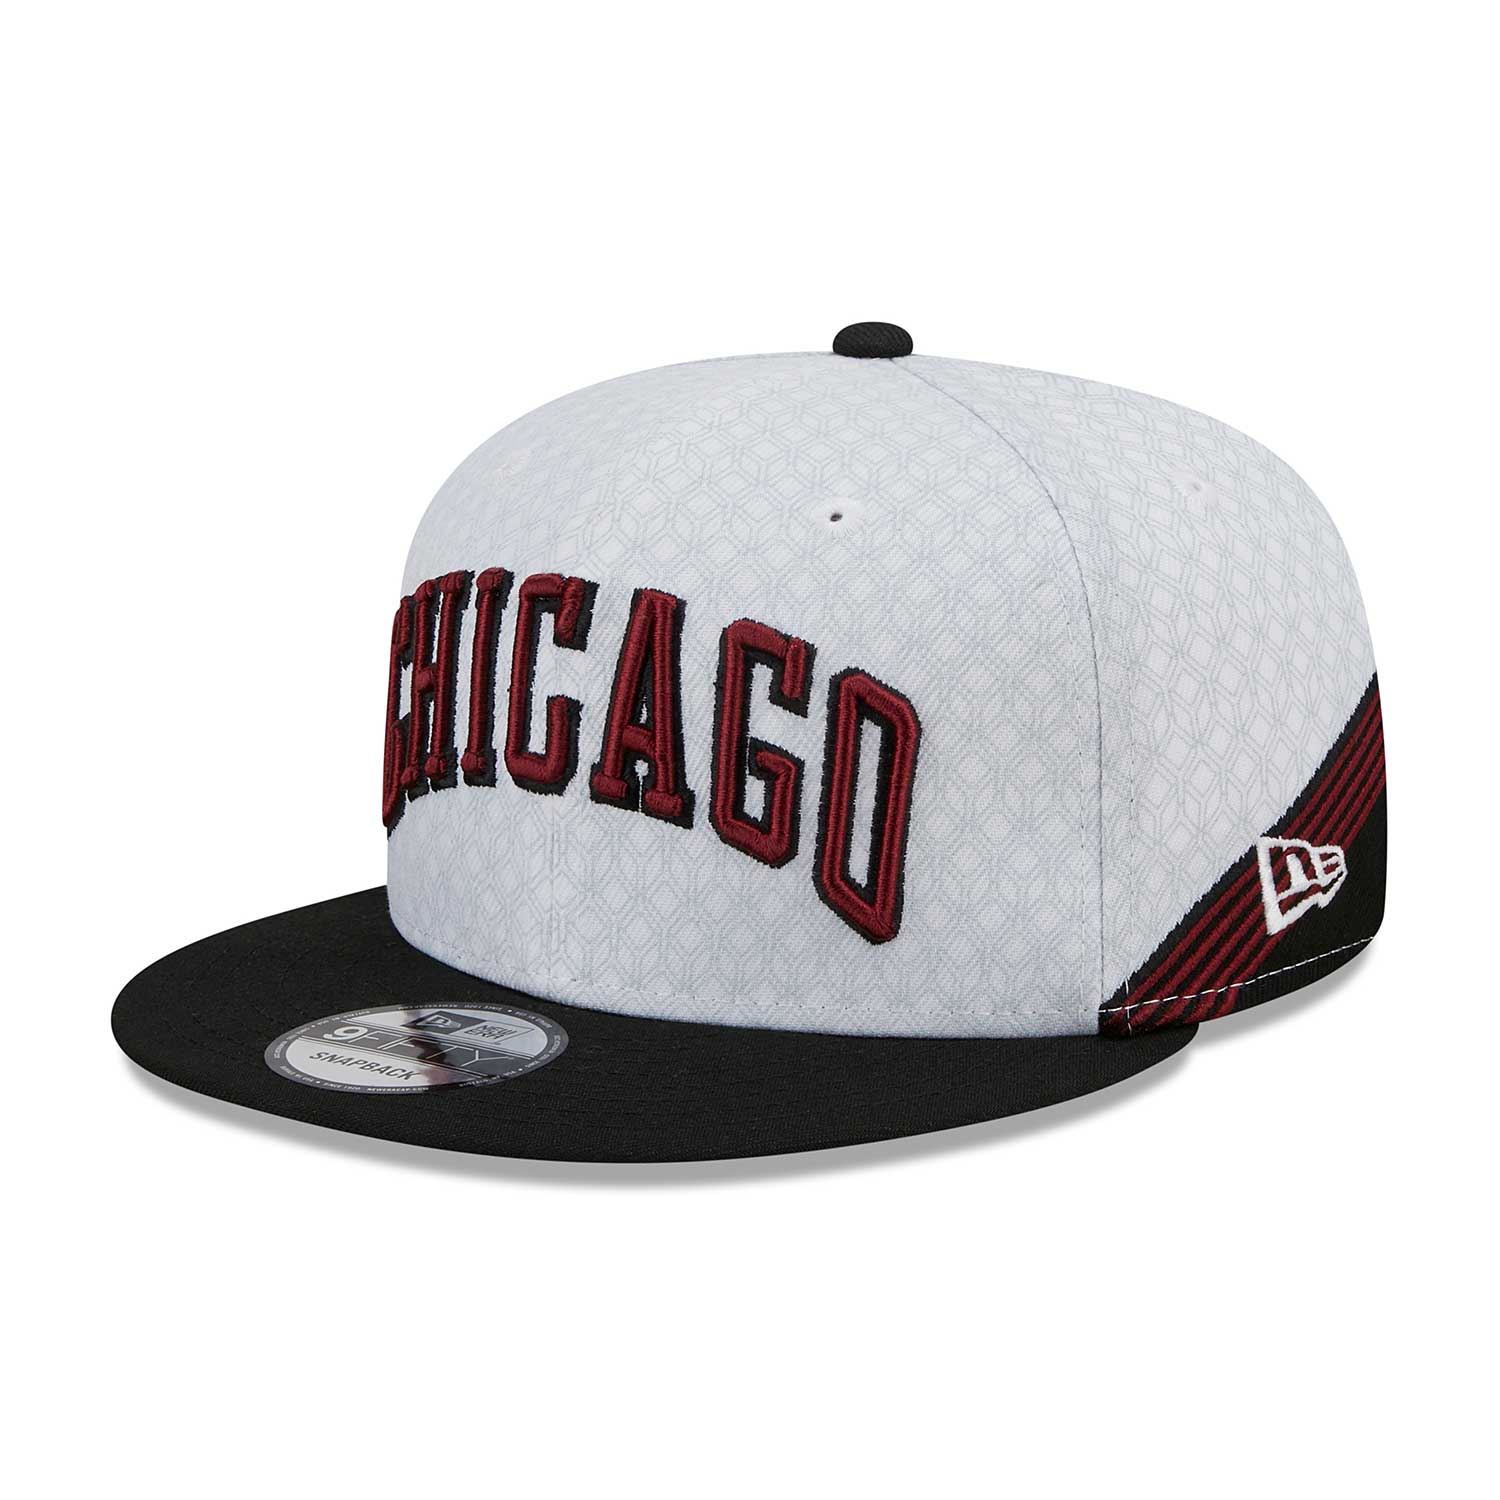 Skyline Chicago Cubs White Sox Bears Bulls Blackhawks City